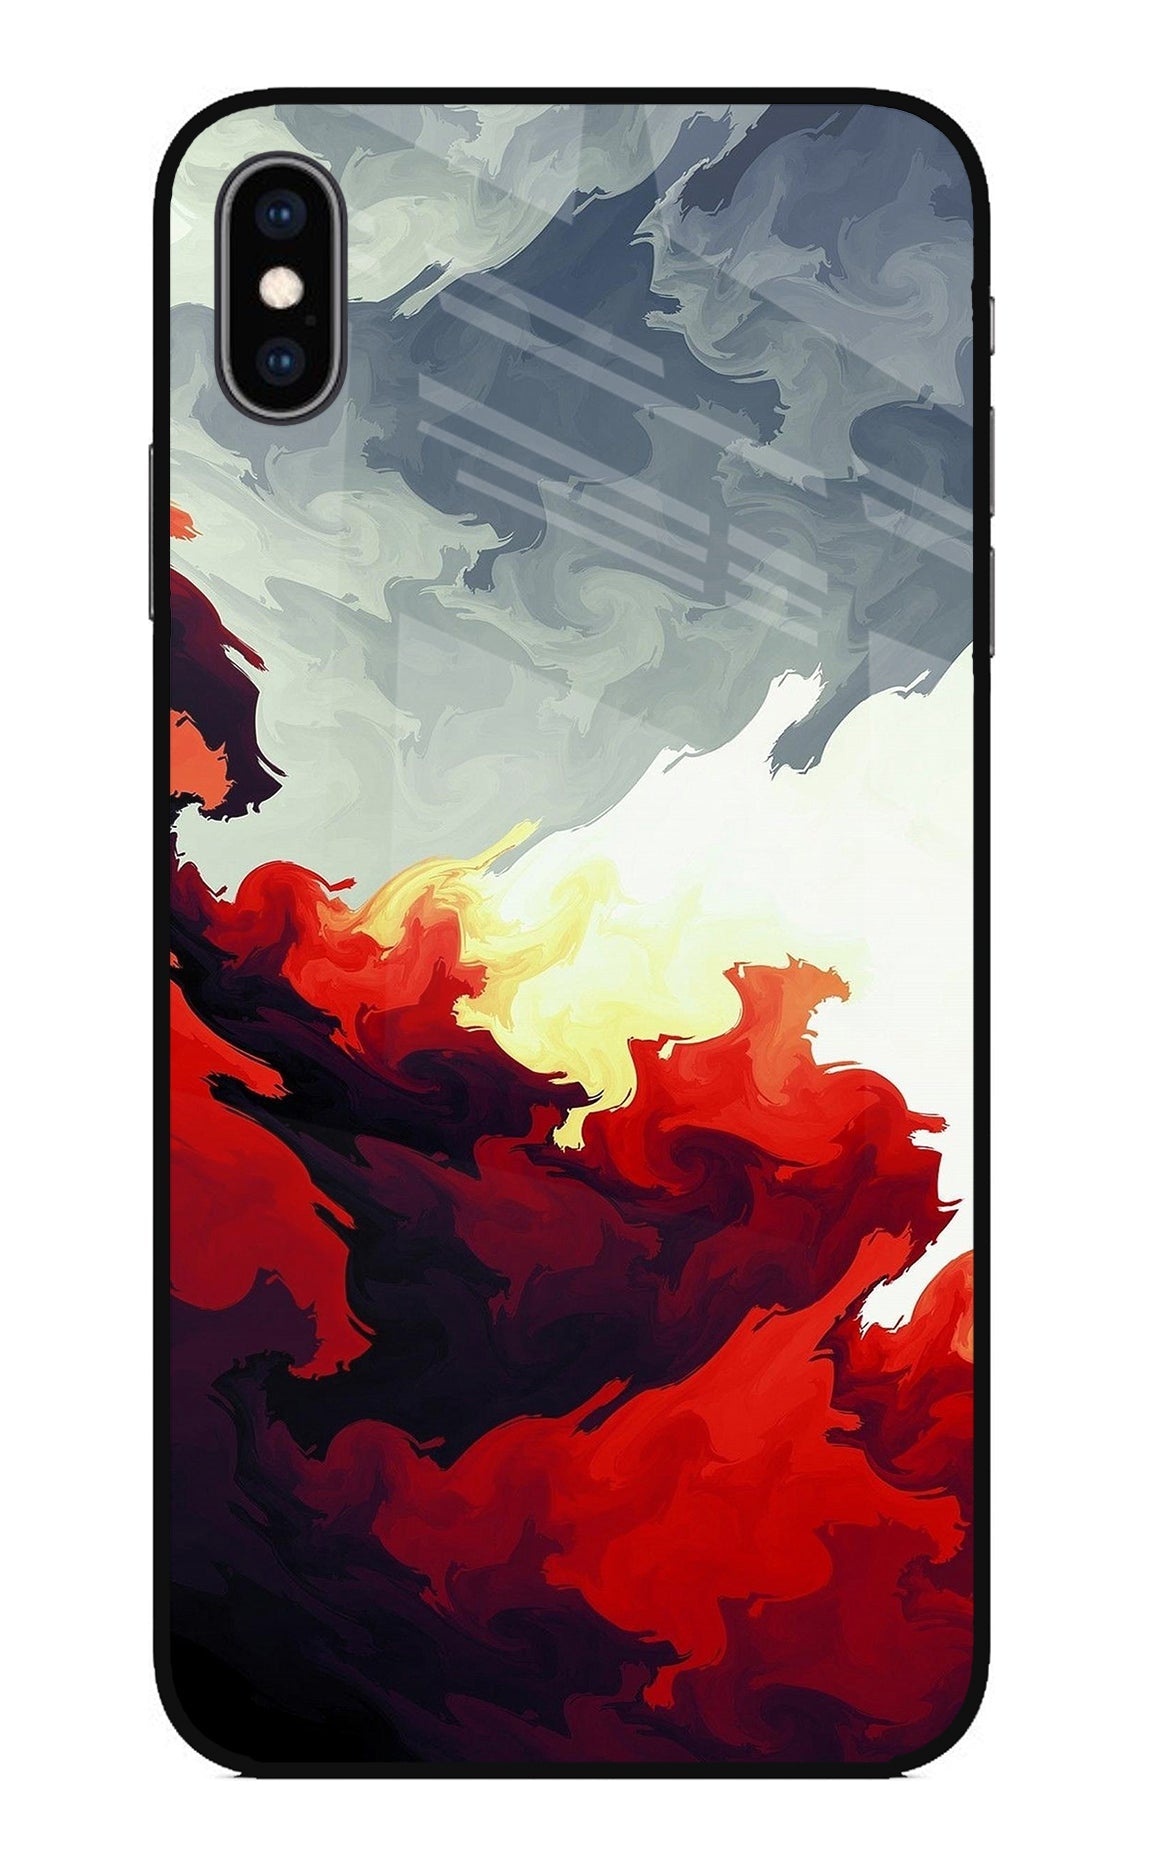 Fire Cloud iPhone XS Max Glass Case